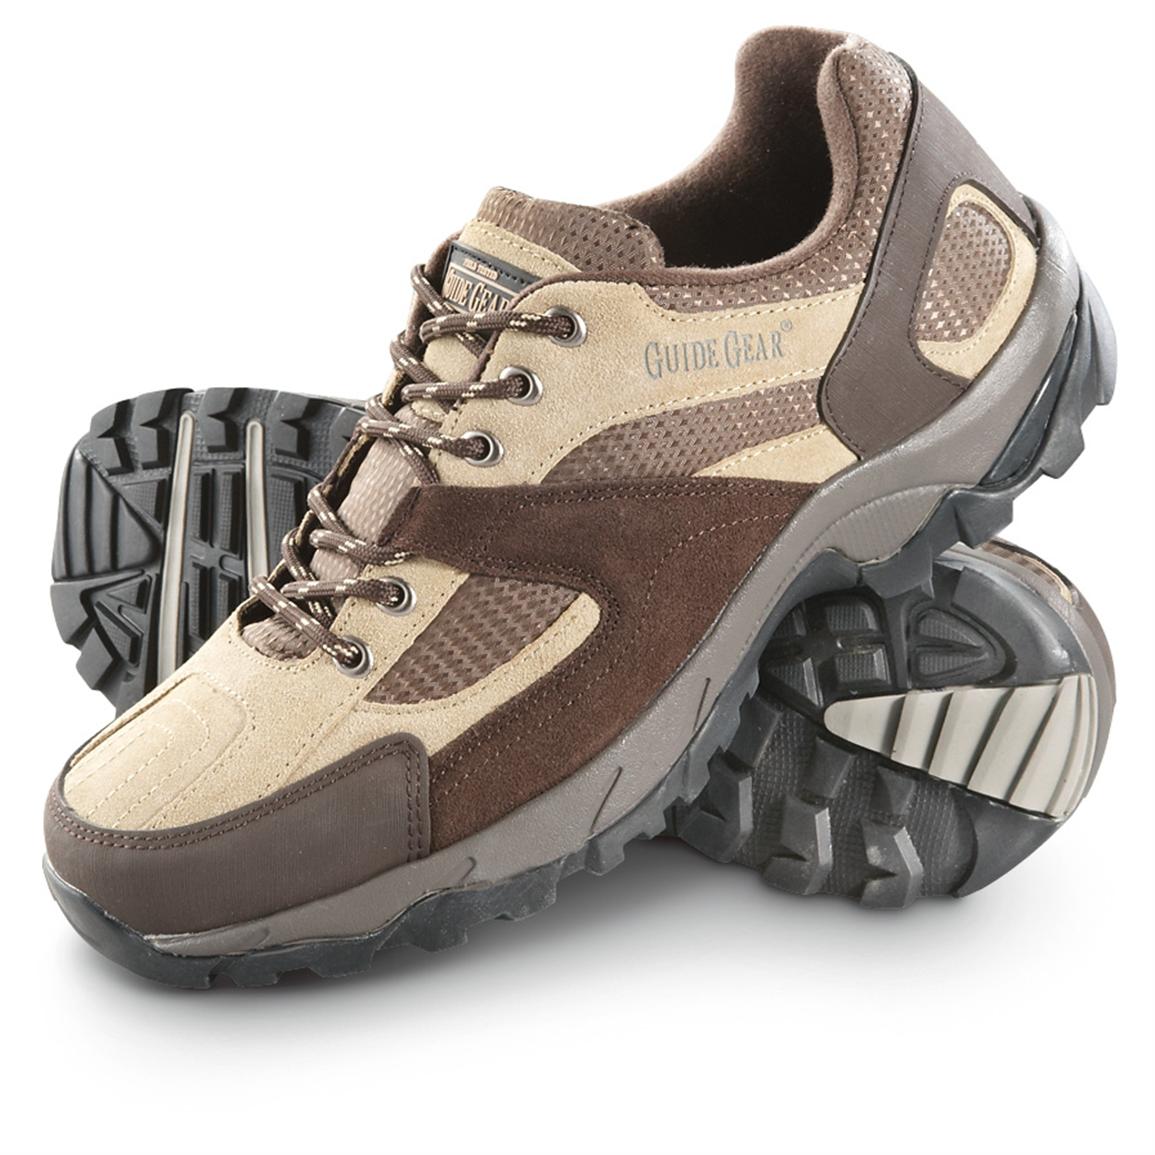 Men's Guide Gear® Trekker Slip-on Hikers, Brown / Tan - 235342, Hiking ...